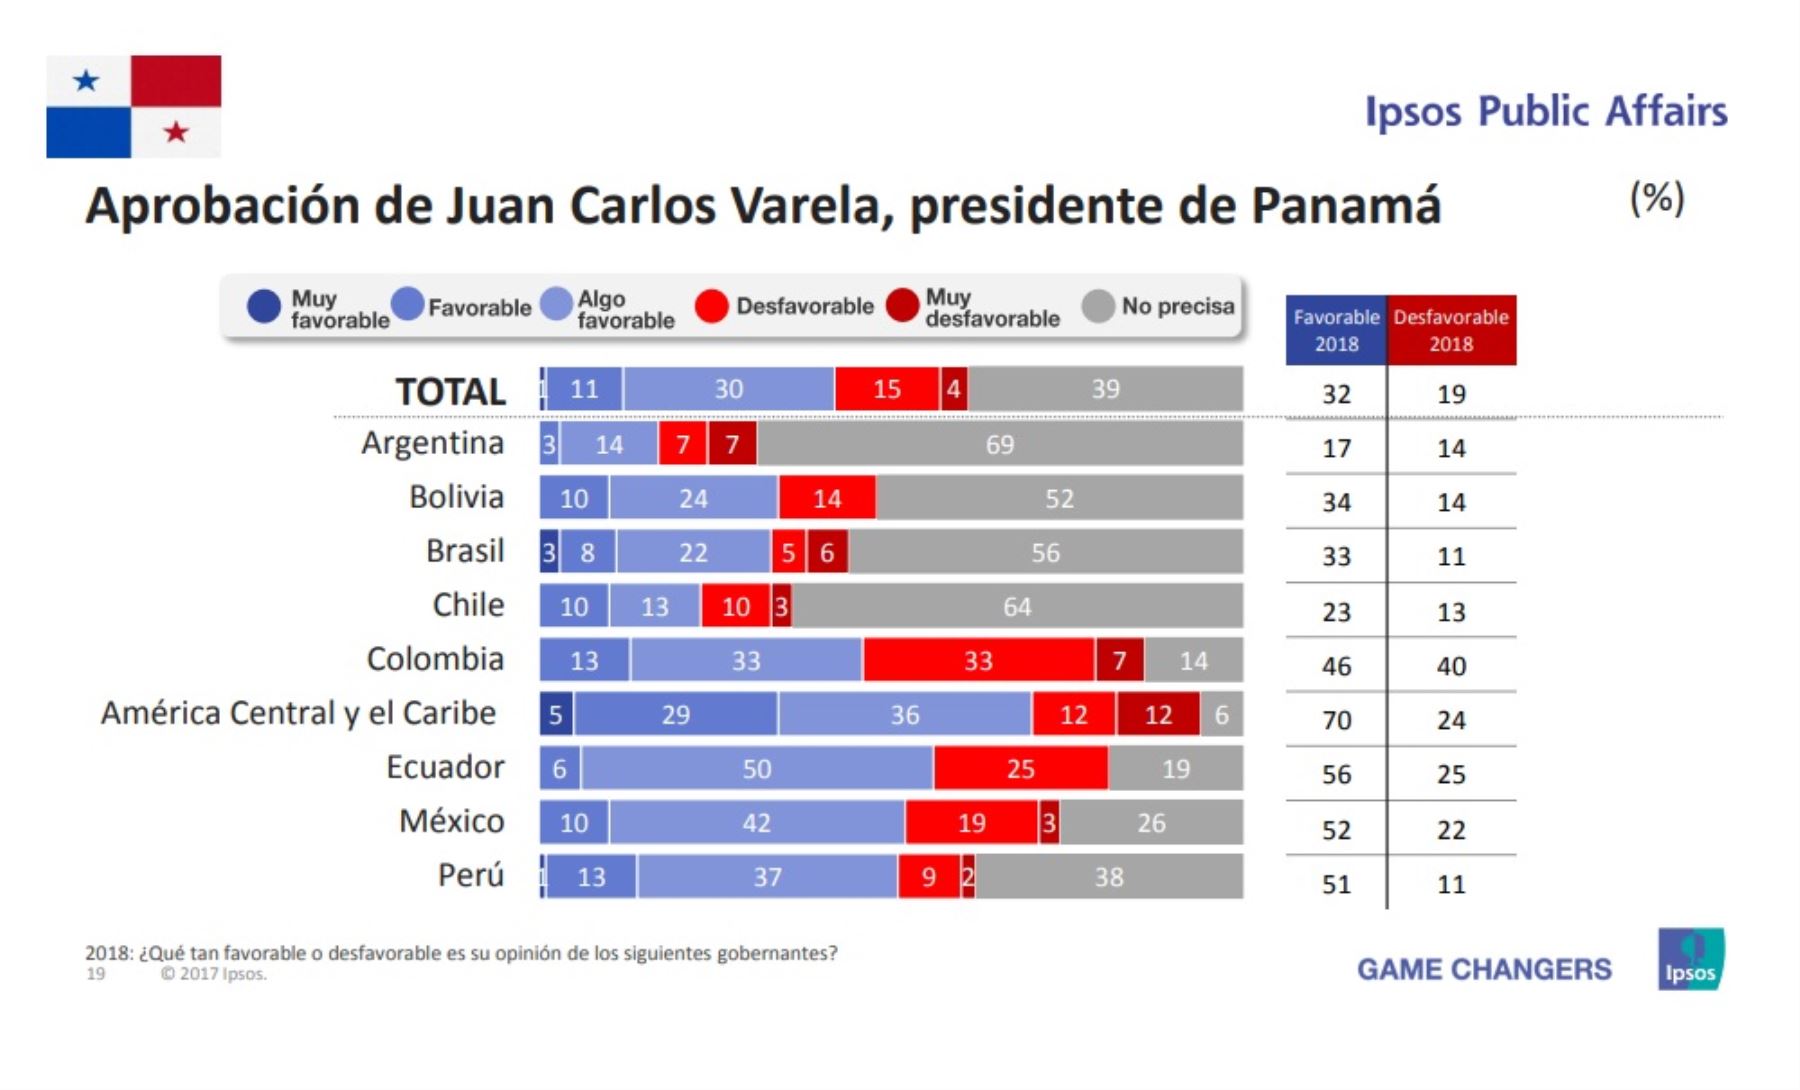 Aprobación del presidente de Panamá, Juan Carlos Varela. Encuesta Ipsos Public Affairs 2018.